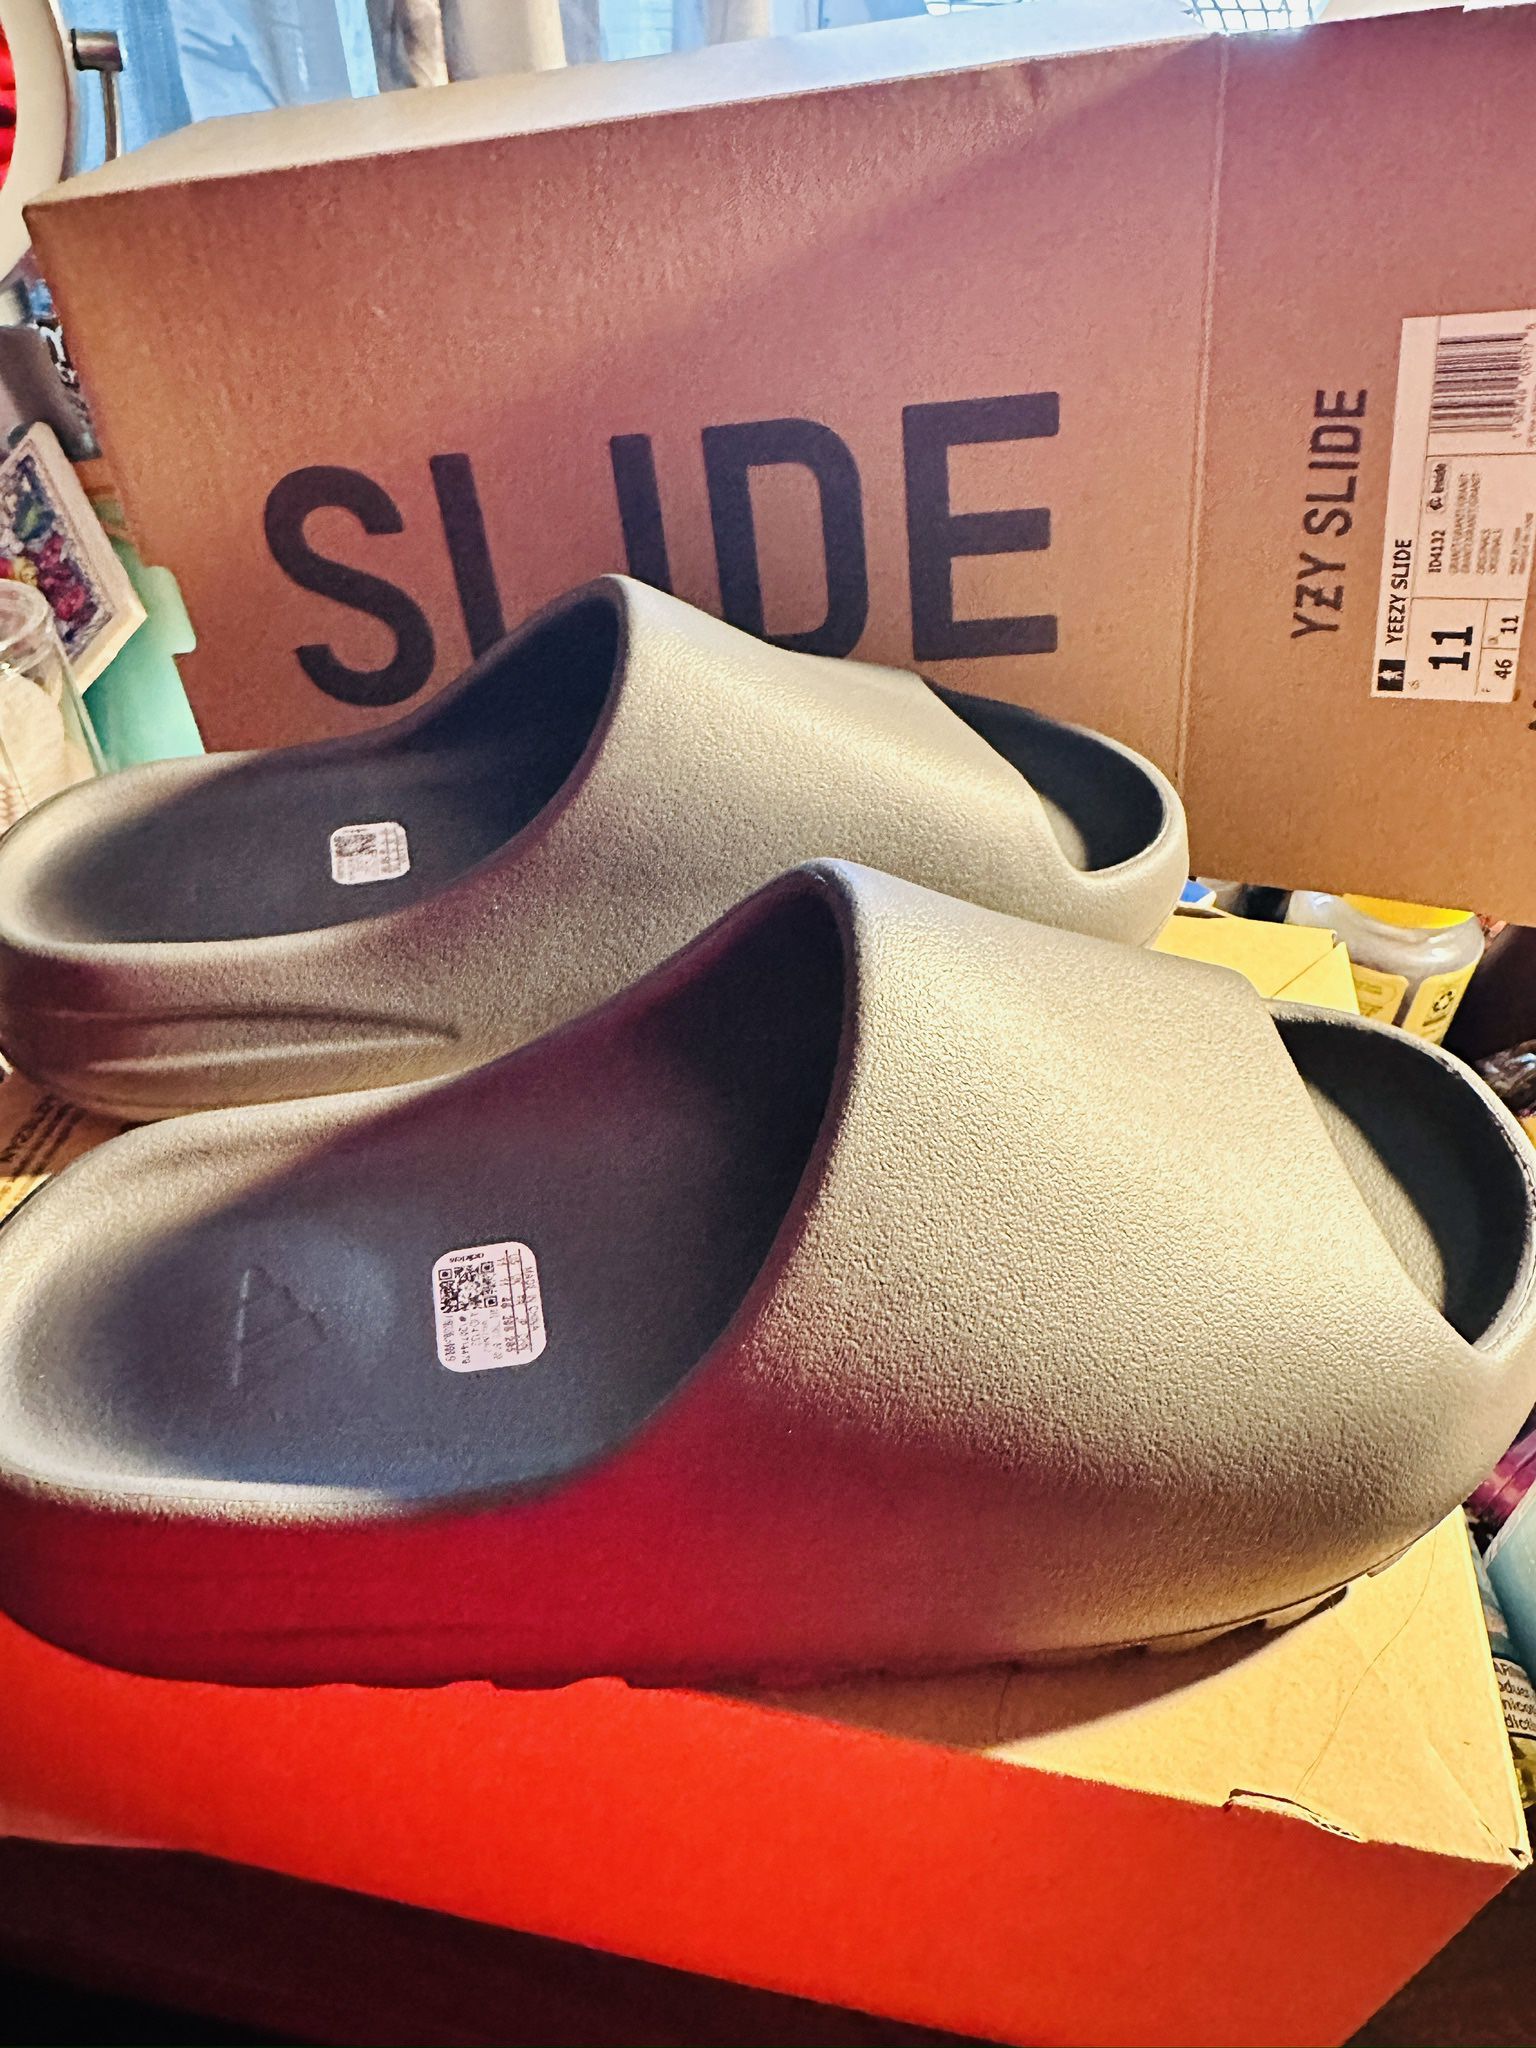 Yeezy Slide Adidas